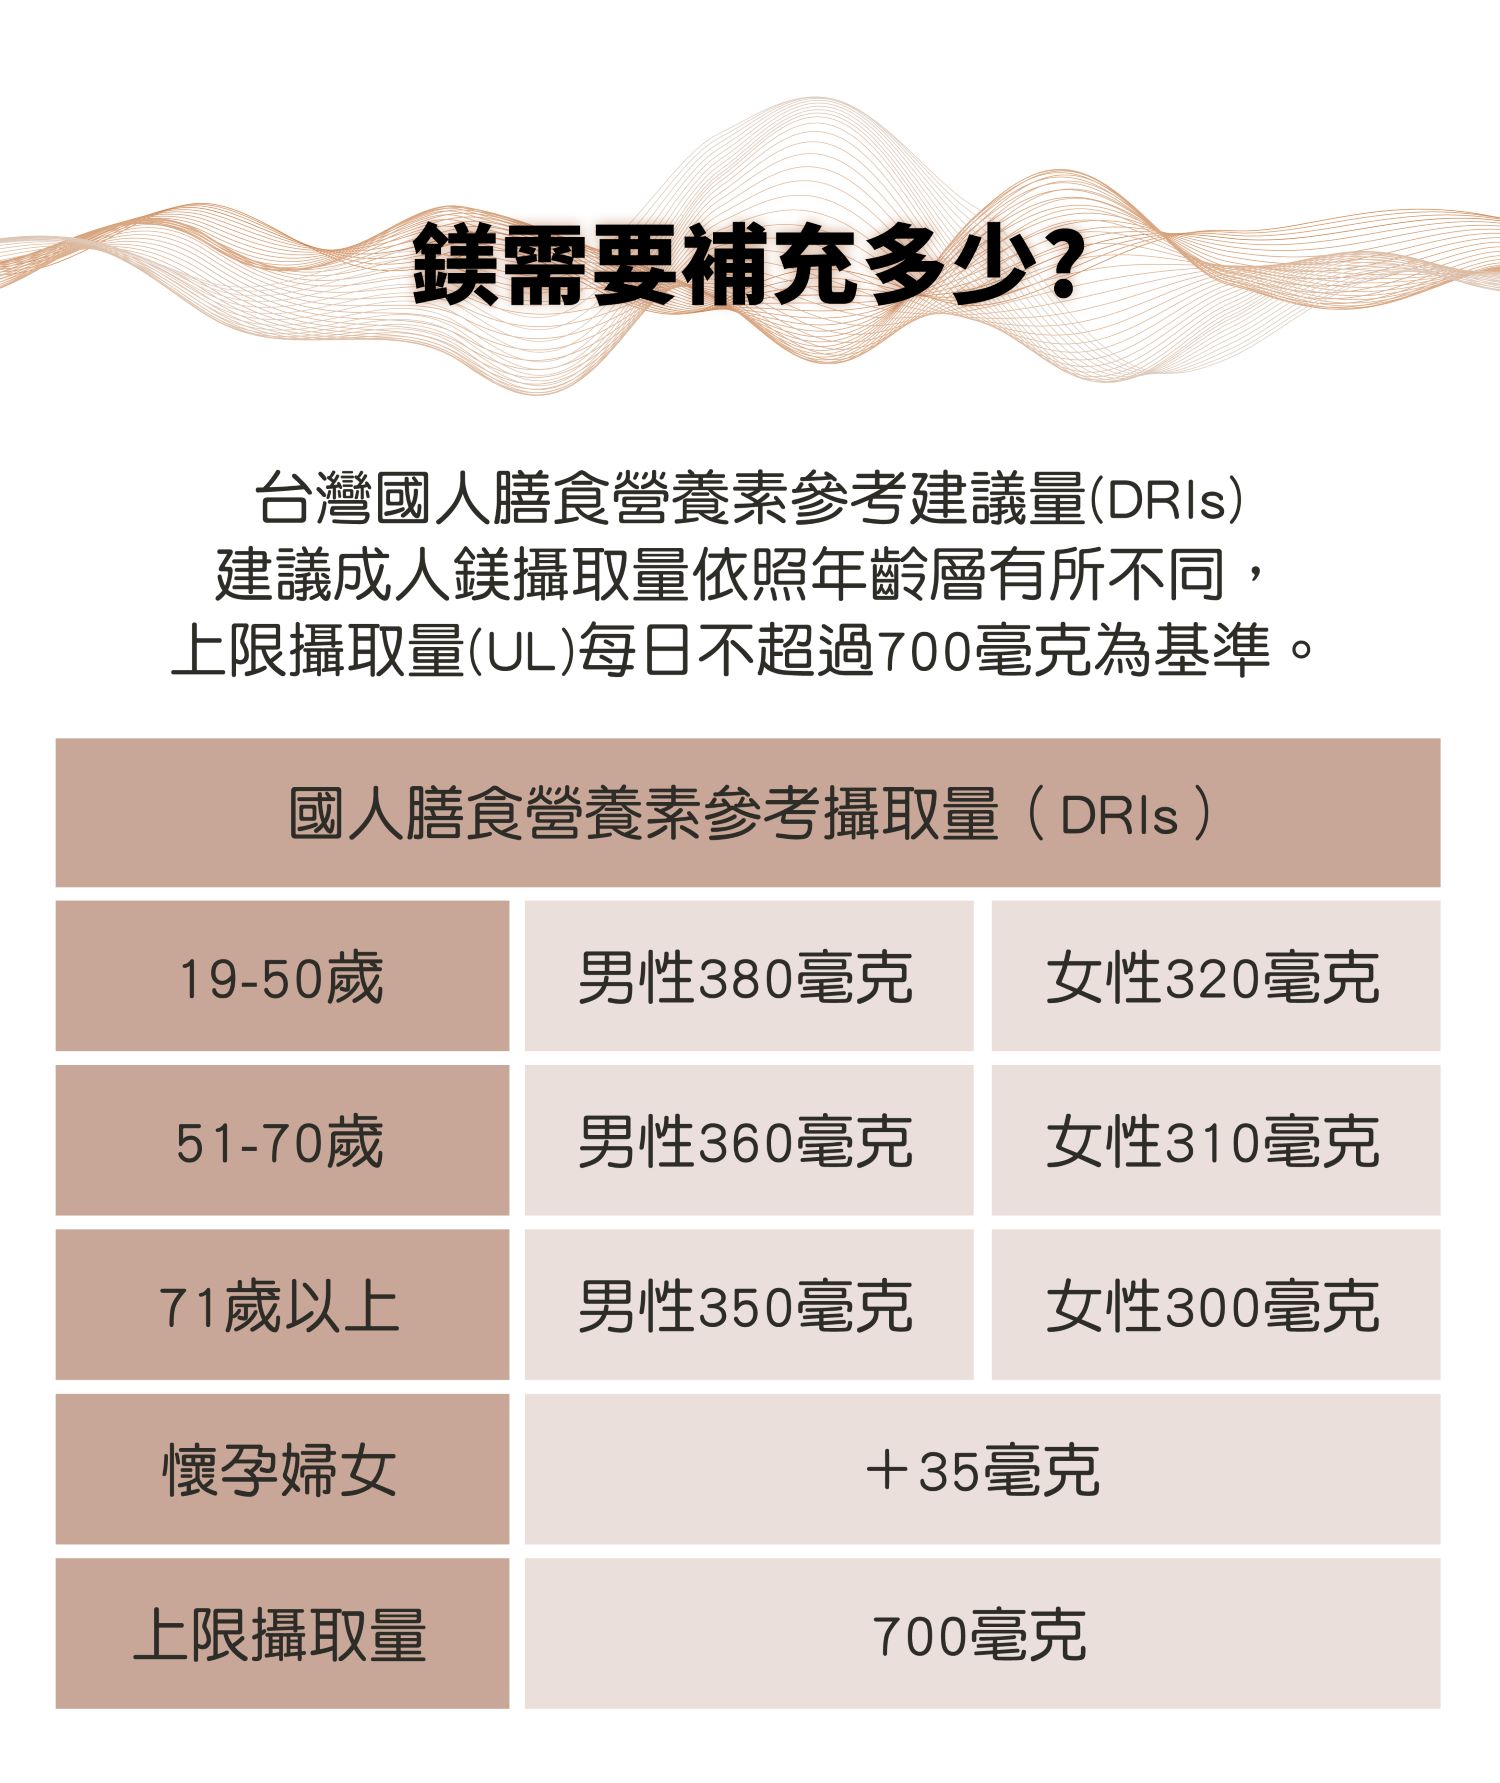 鎂需要補充多少?   台灣國人膳食營養素參考建議量(DRIs)建議成人鎂攝取量依照年齡層有所不同，上限攝取量(UL)每日不超過700毫克為基準。 